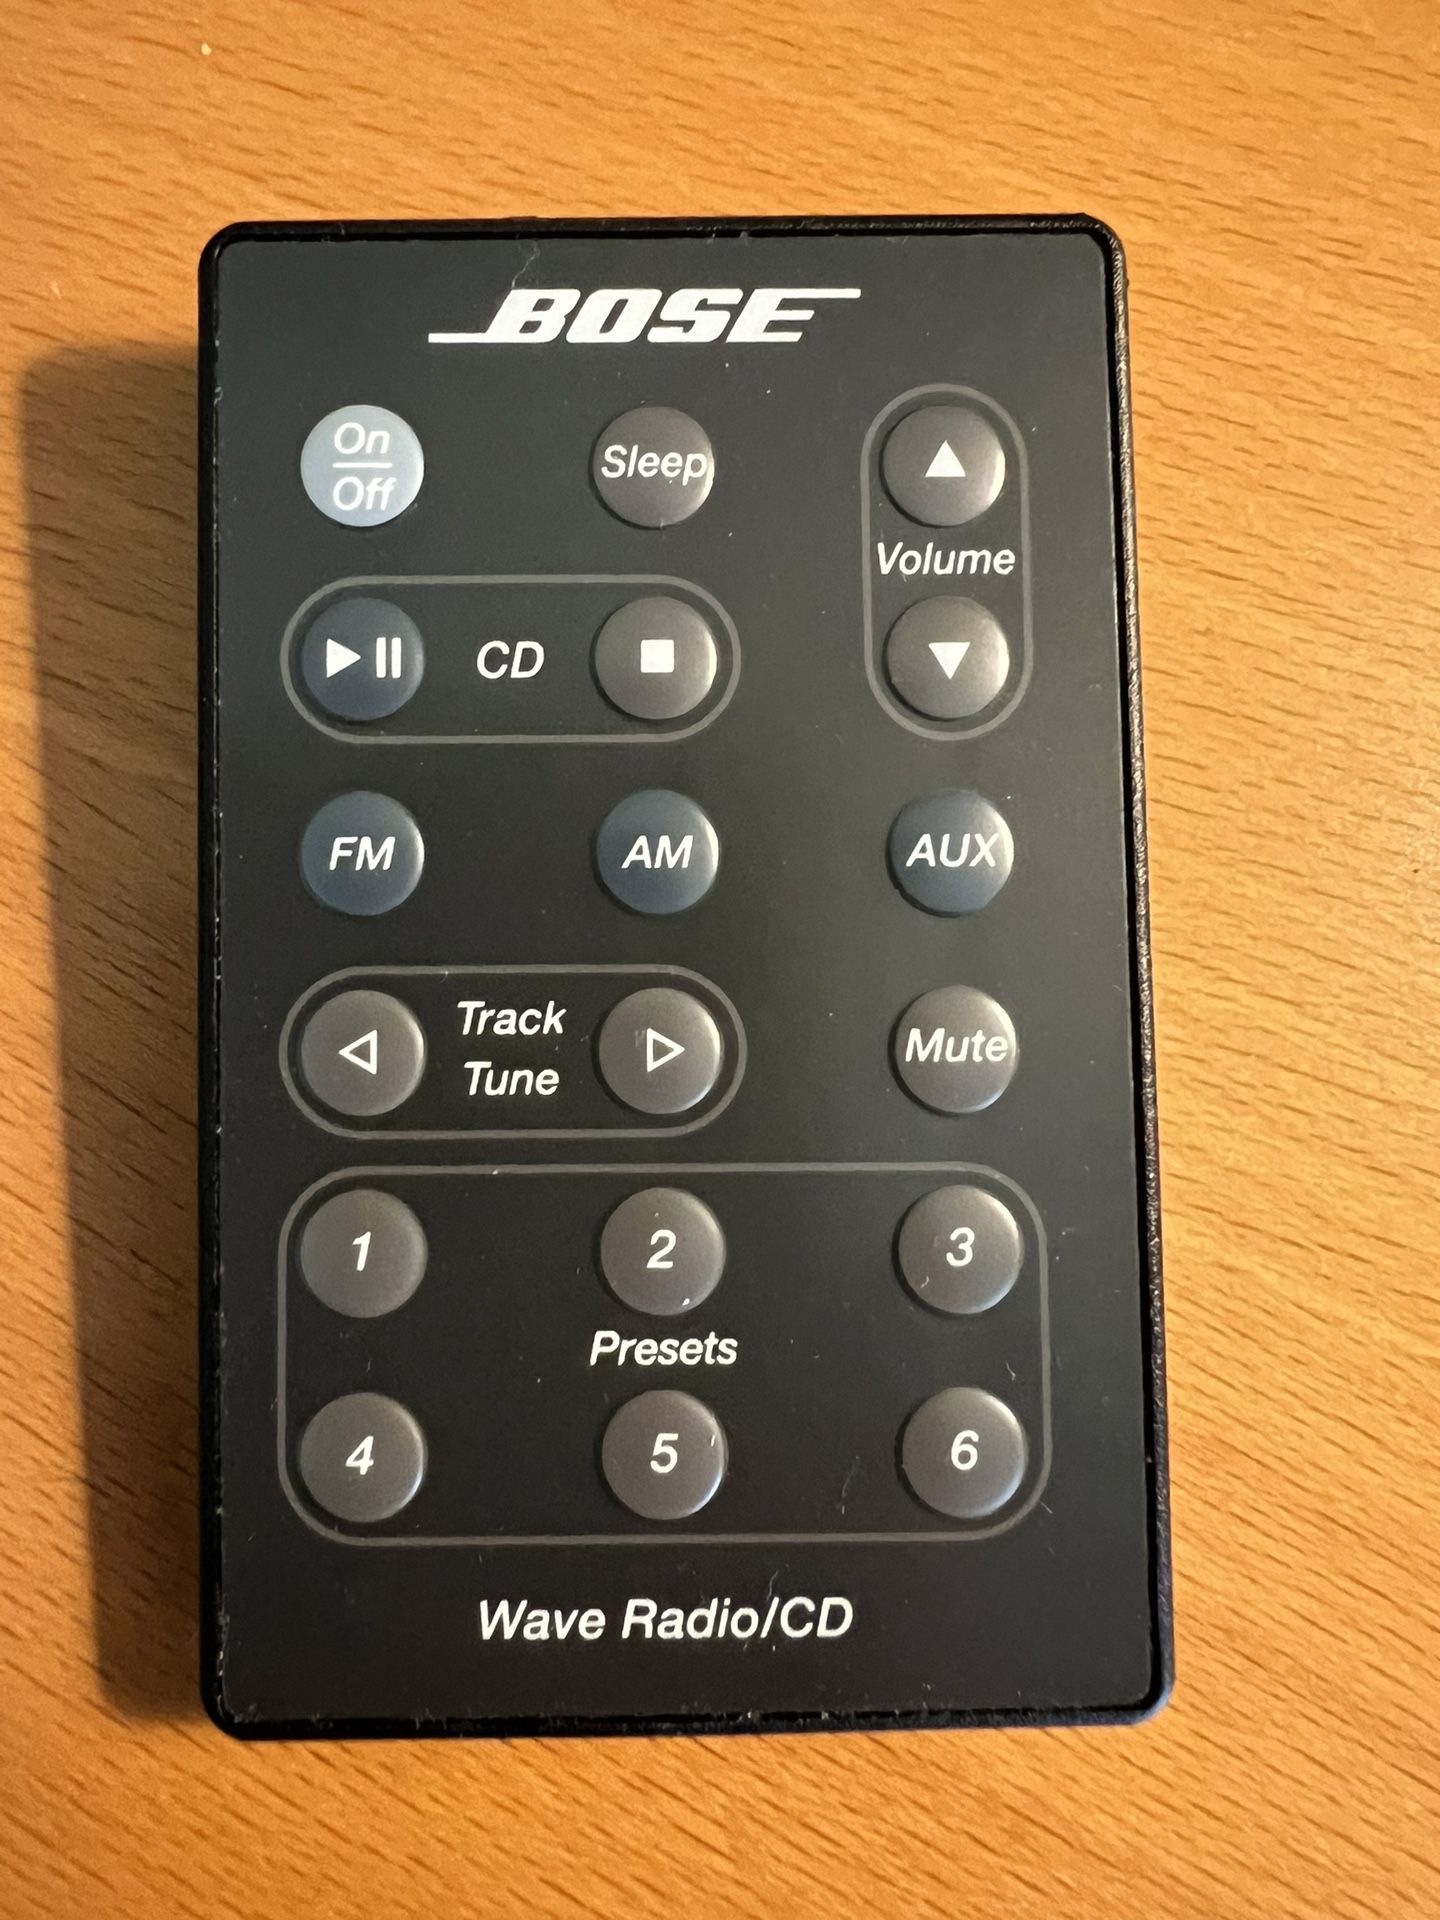 BOSE Wave Radio/CD Remote control 